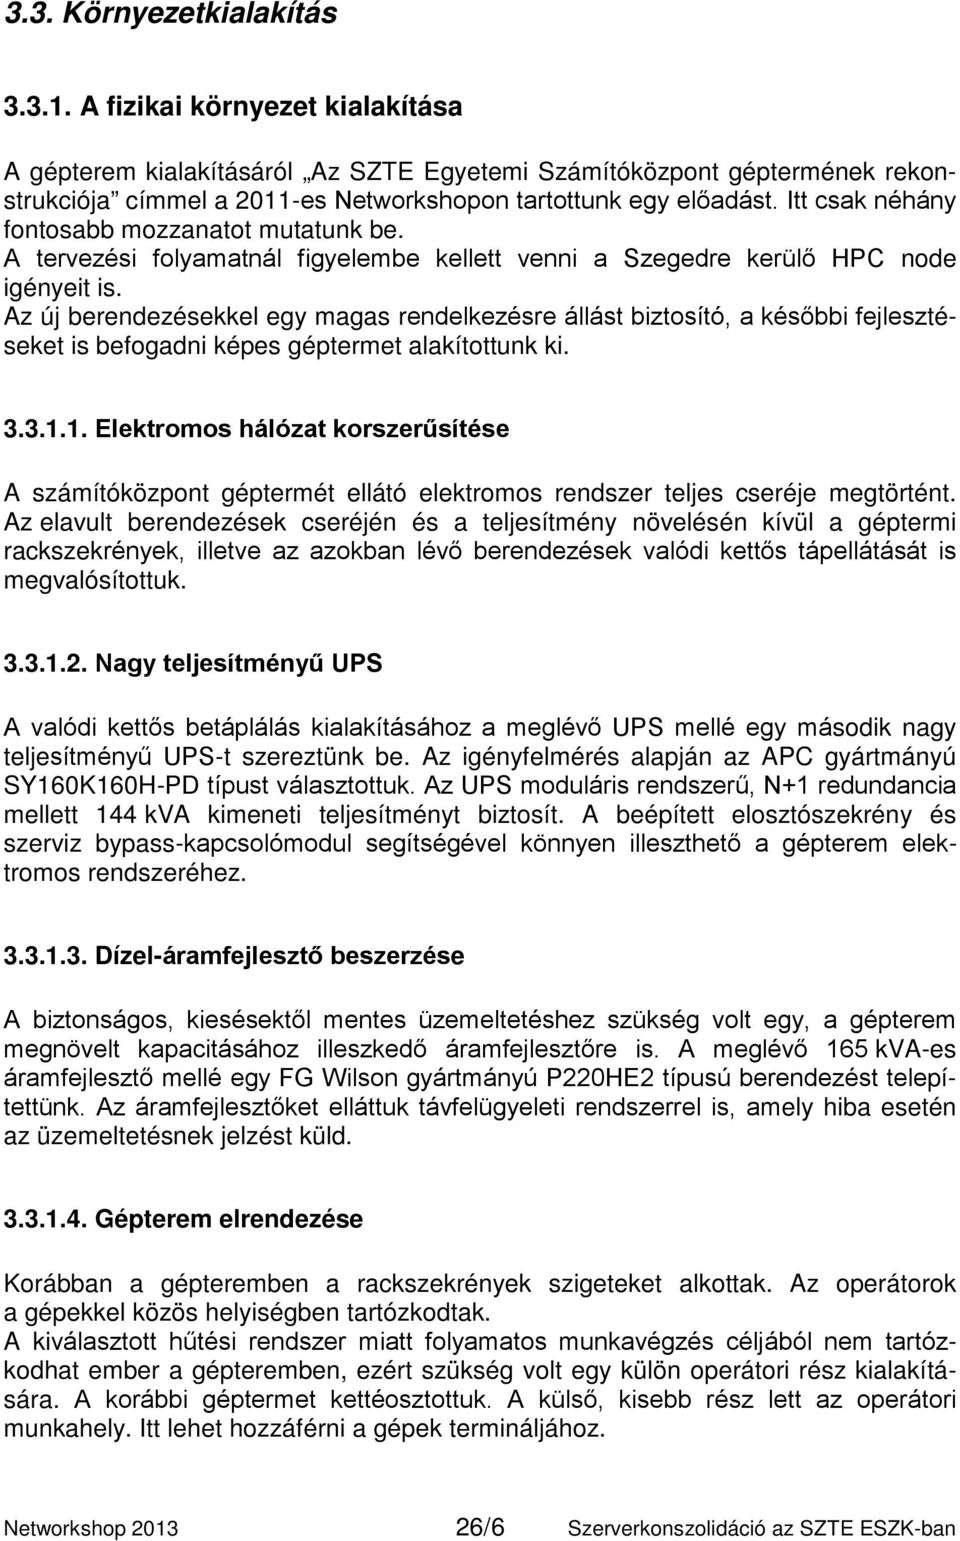 Itt csak néhány fontosabb mozzanatot mutatunk be. A tervezési folyamatnál figyelembe kellett venni a Szegedre kerülő HPC node igényeit is.